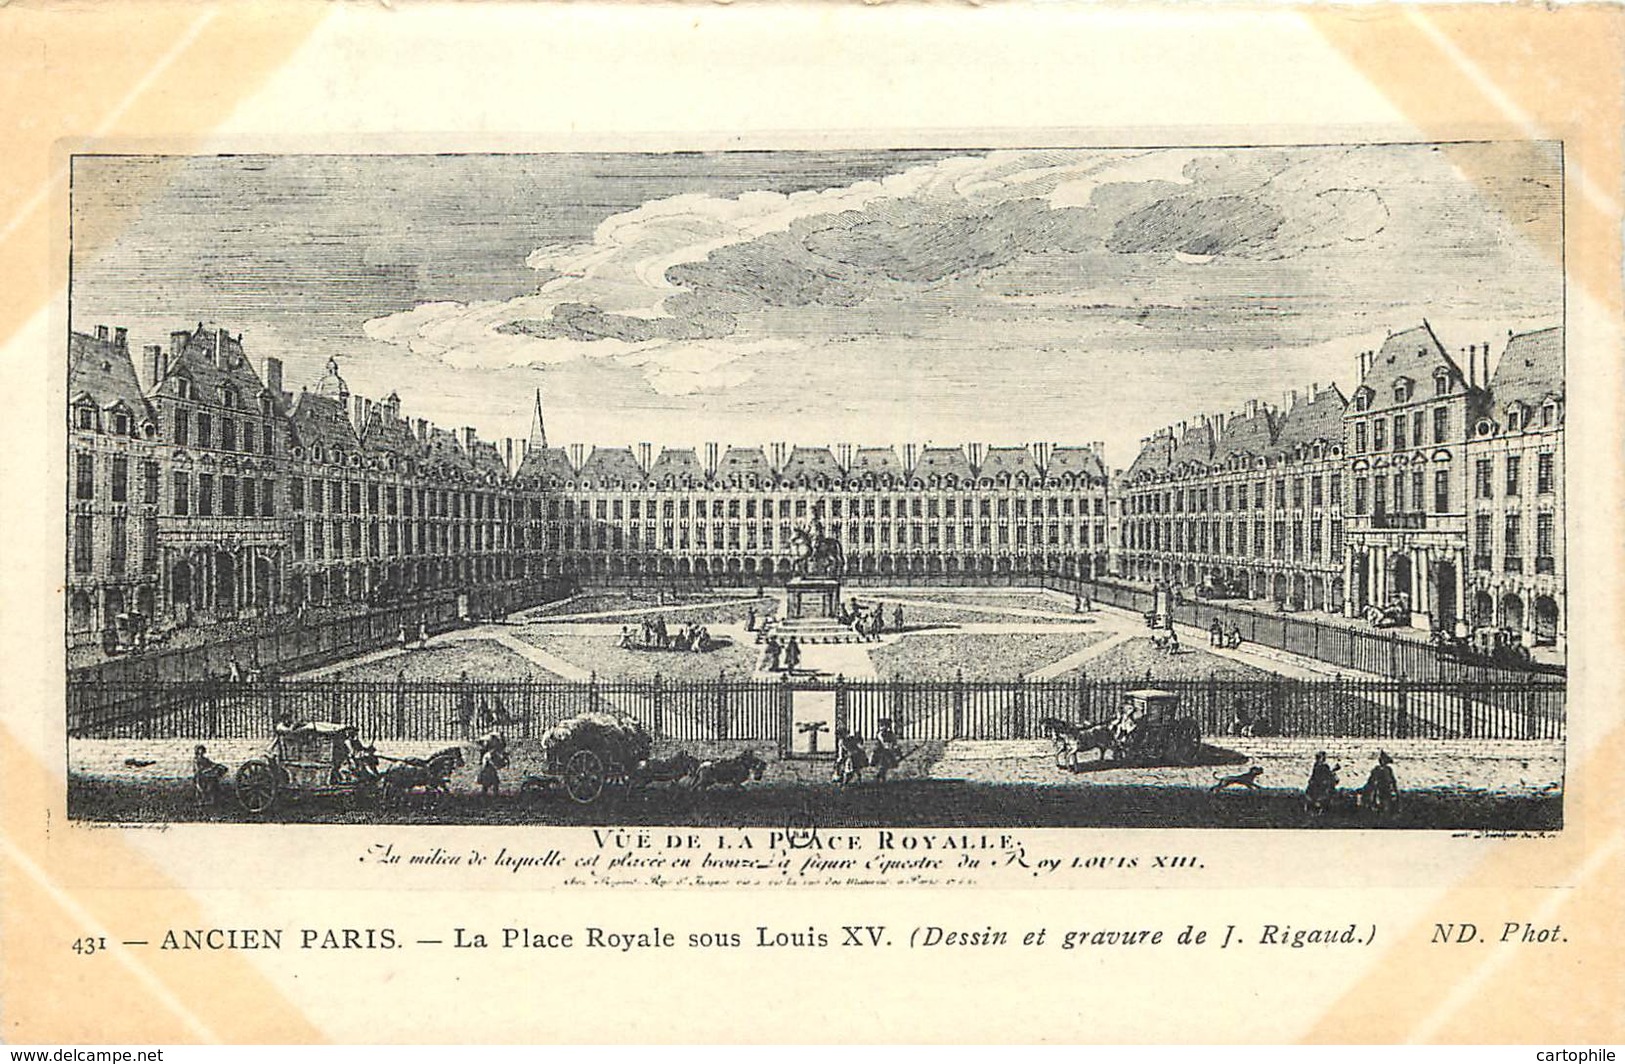 75 - PARIS - Beau lot de 50 cartes postales de l'Ancien Paris - Série ND Photo